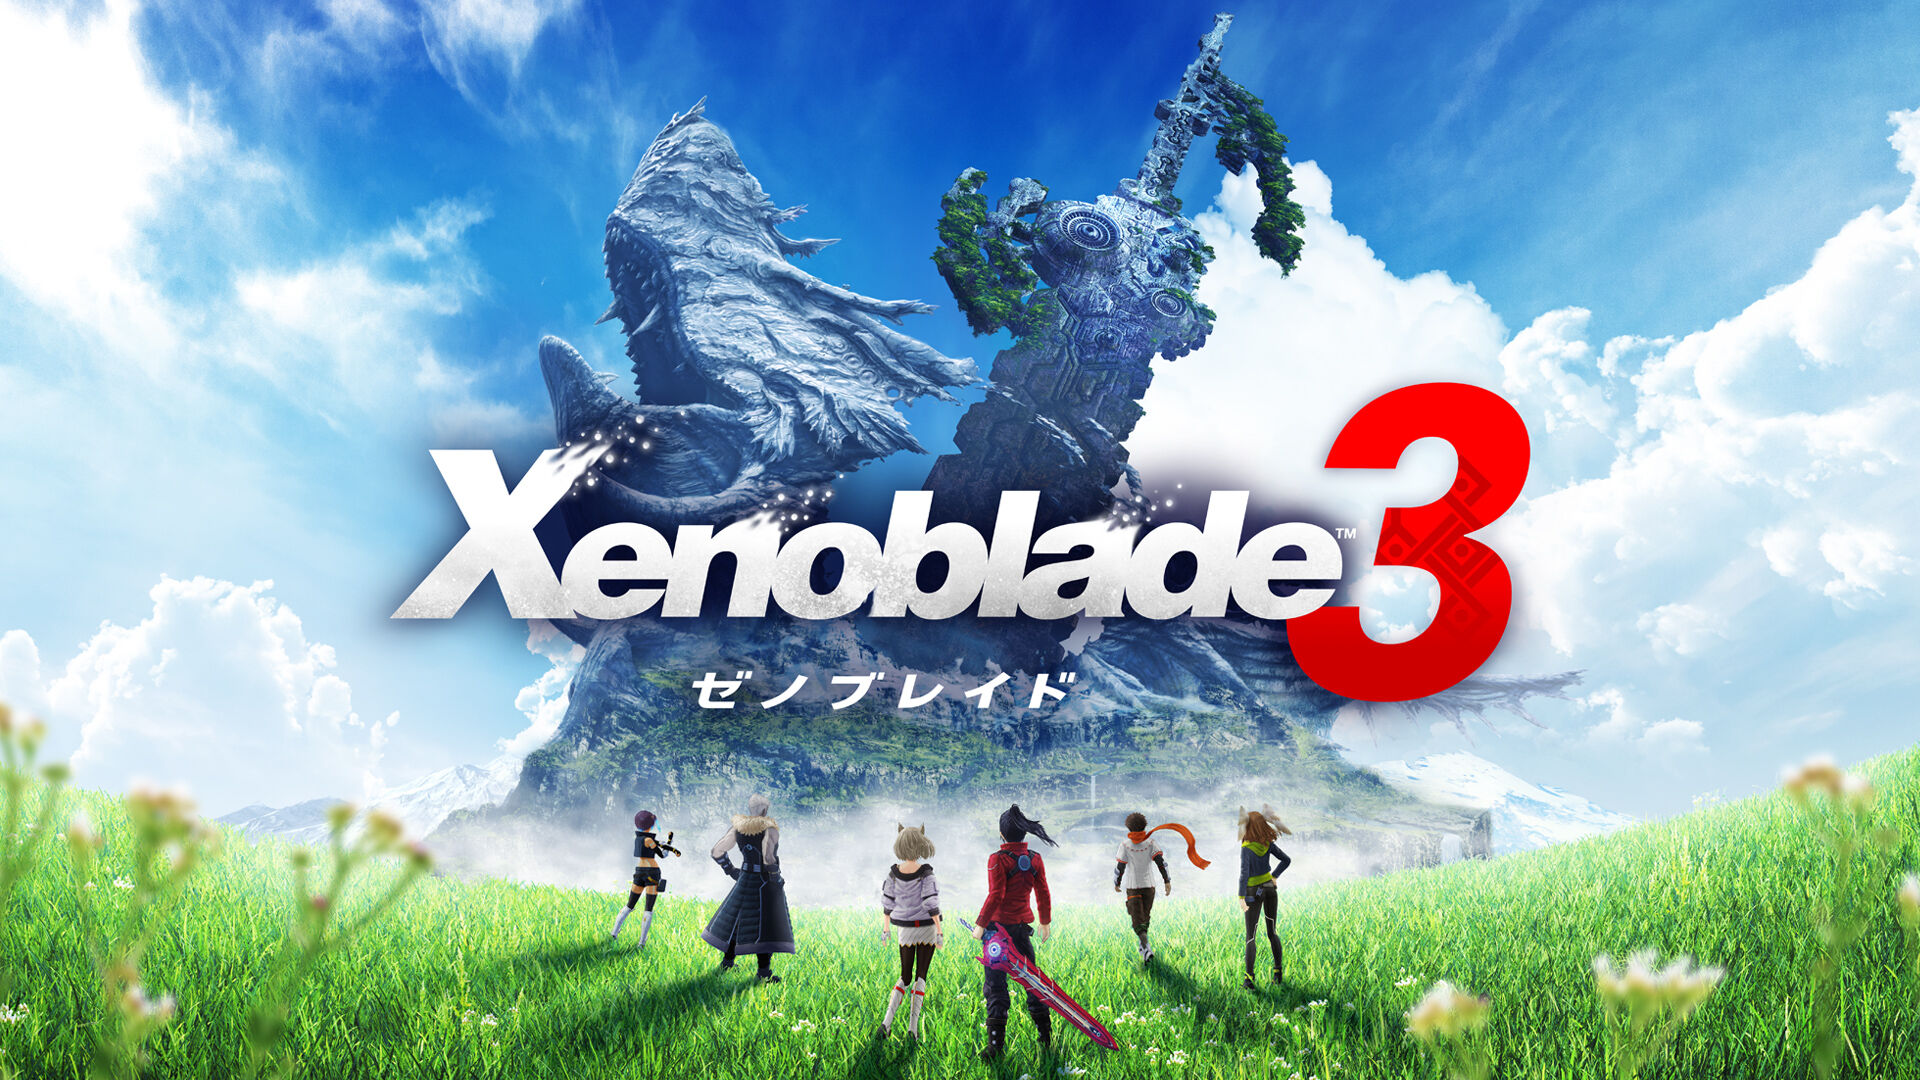 Xenoblade3 (ゼノブレイド3) - マイニンテンドーストア - Nintendo